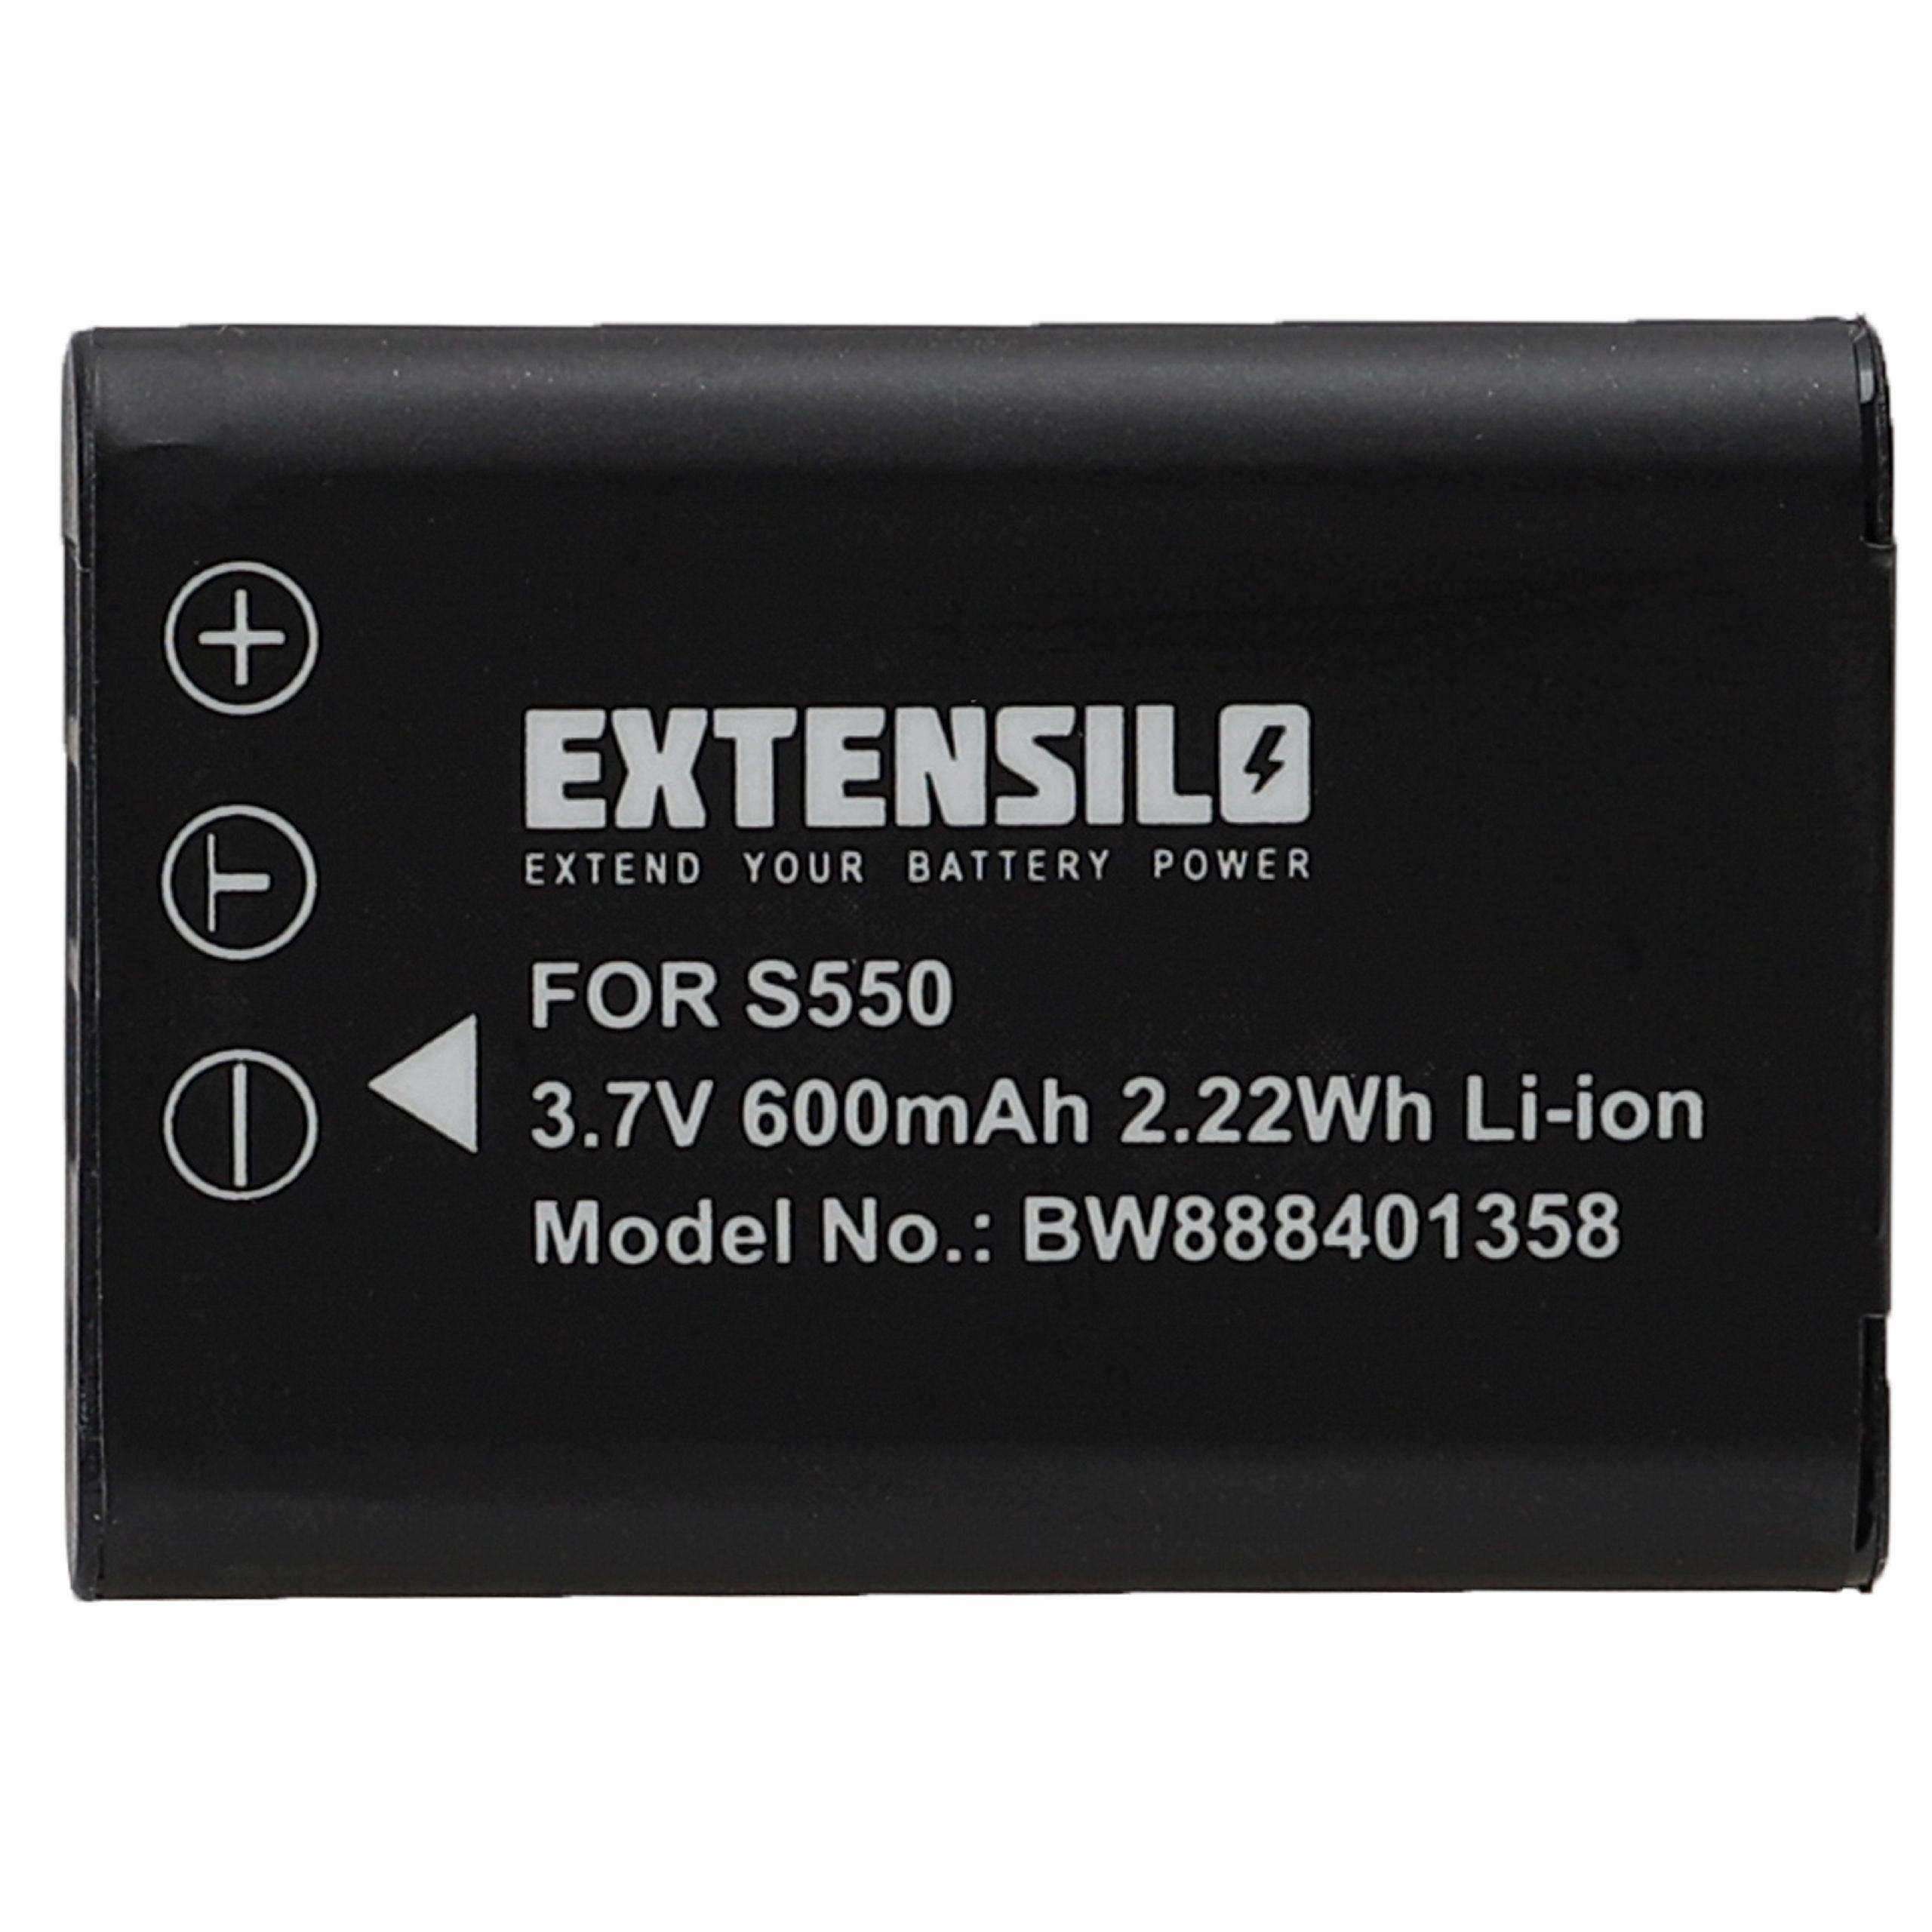 Batterie remplace Nikon EN-EL11 pour appareil photo - 600mAh 3,7V Li-ion